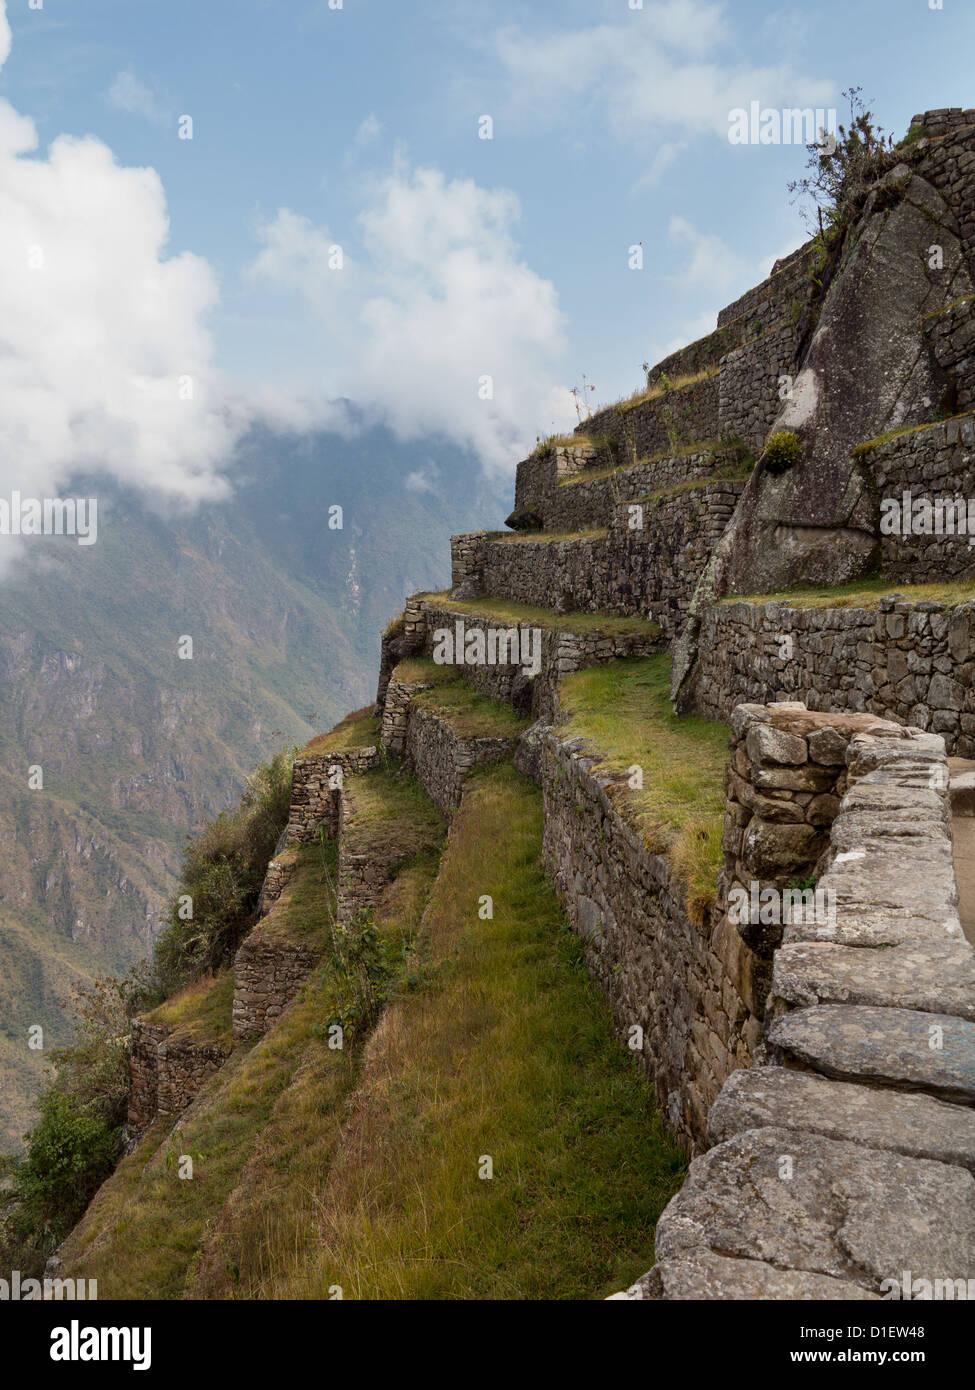 Mañana opiniones de terrazas de Machu Picchu como niebla borra desde la ladera de la montaña ruinas Foto de stock